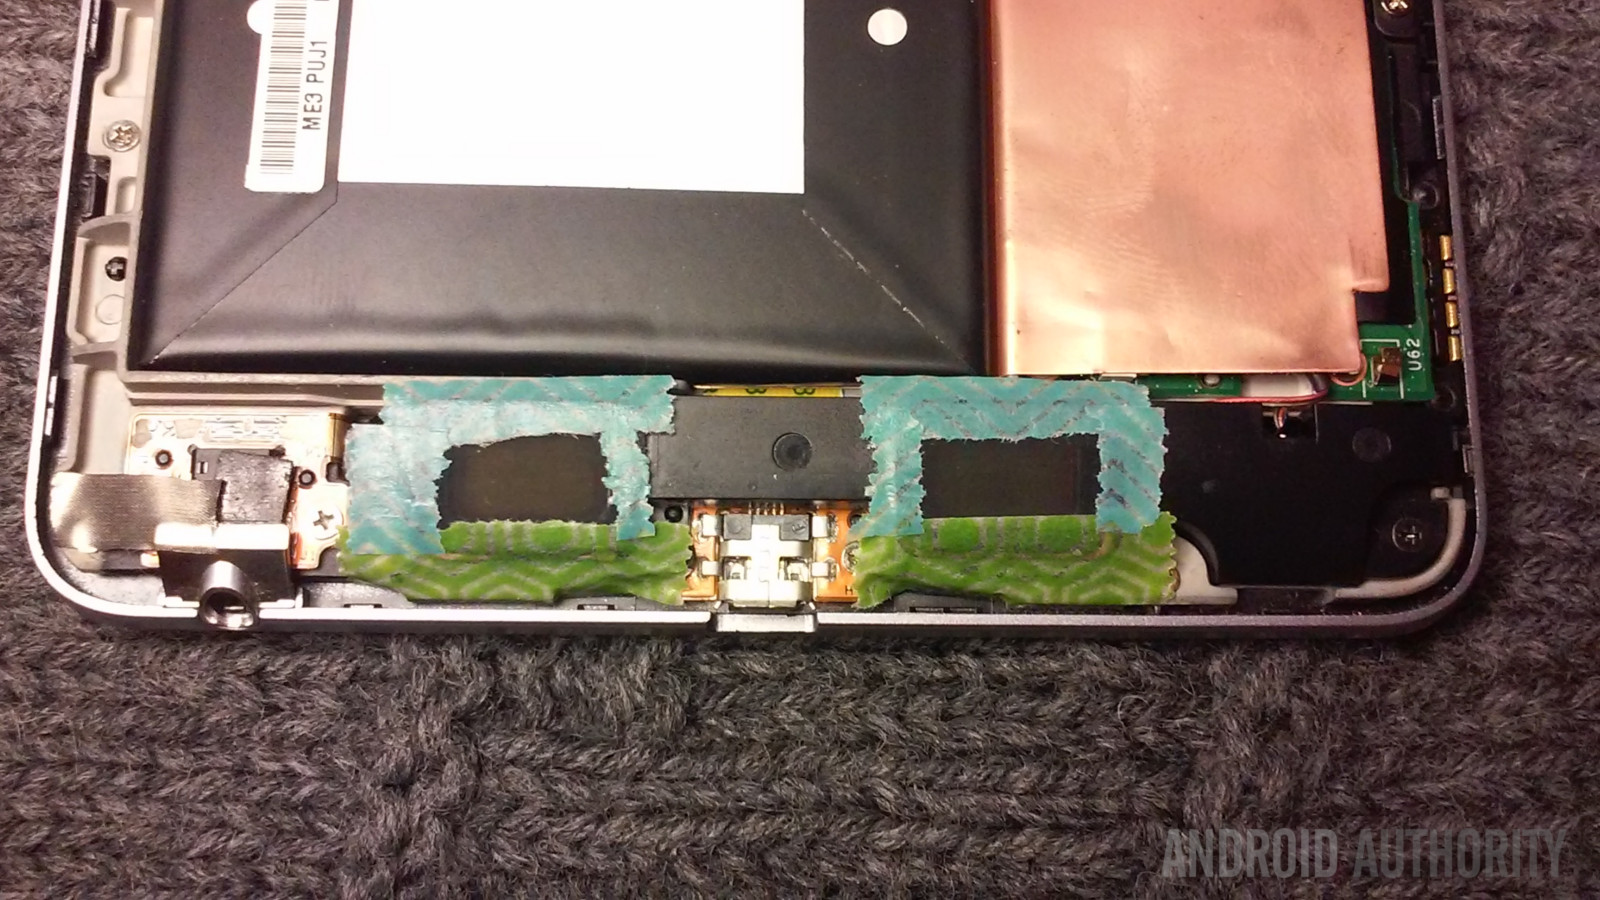 Nexus 7 2012 taped speakers